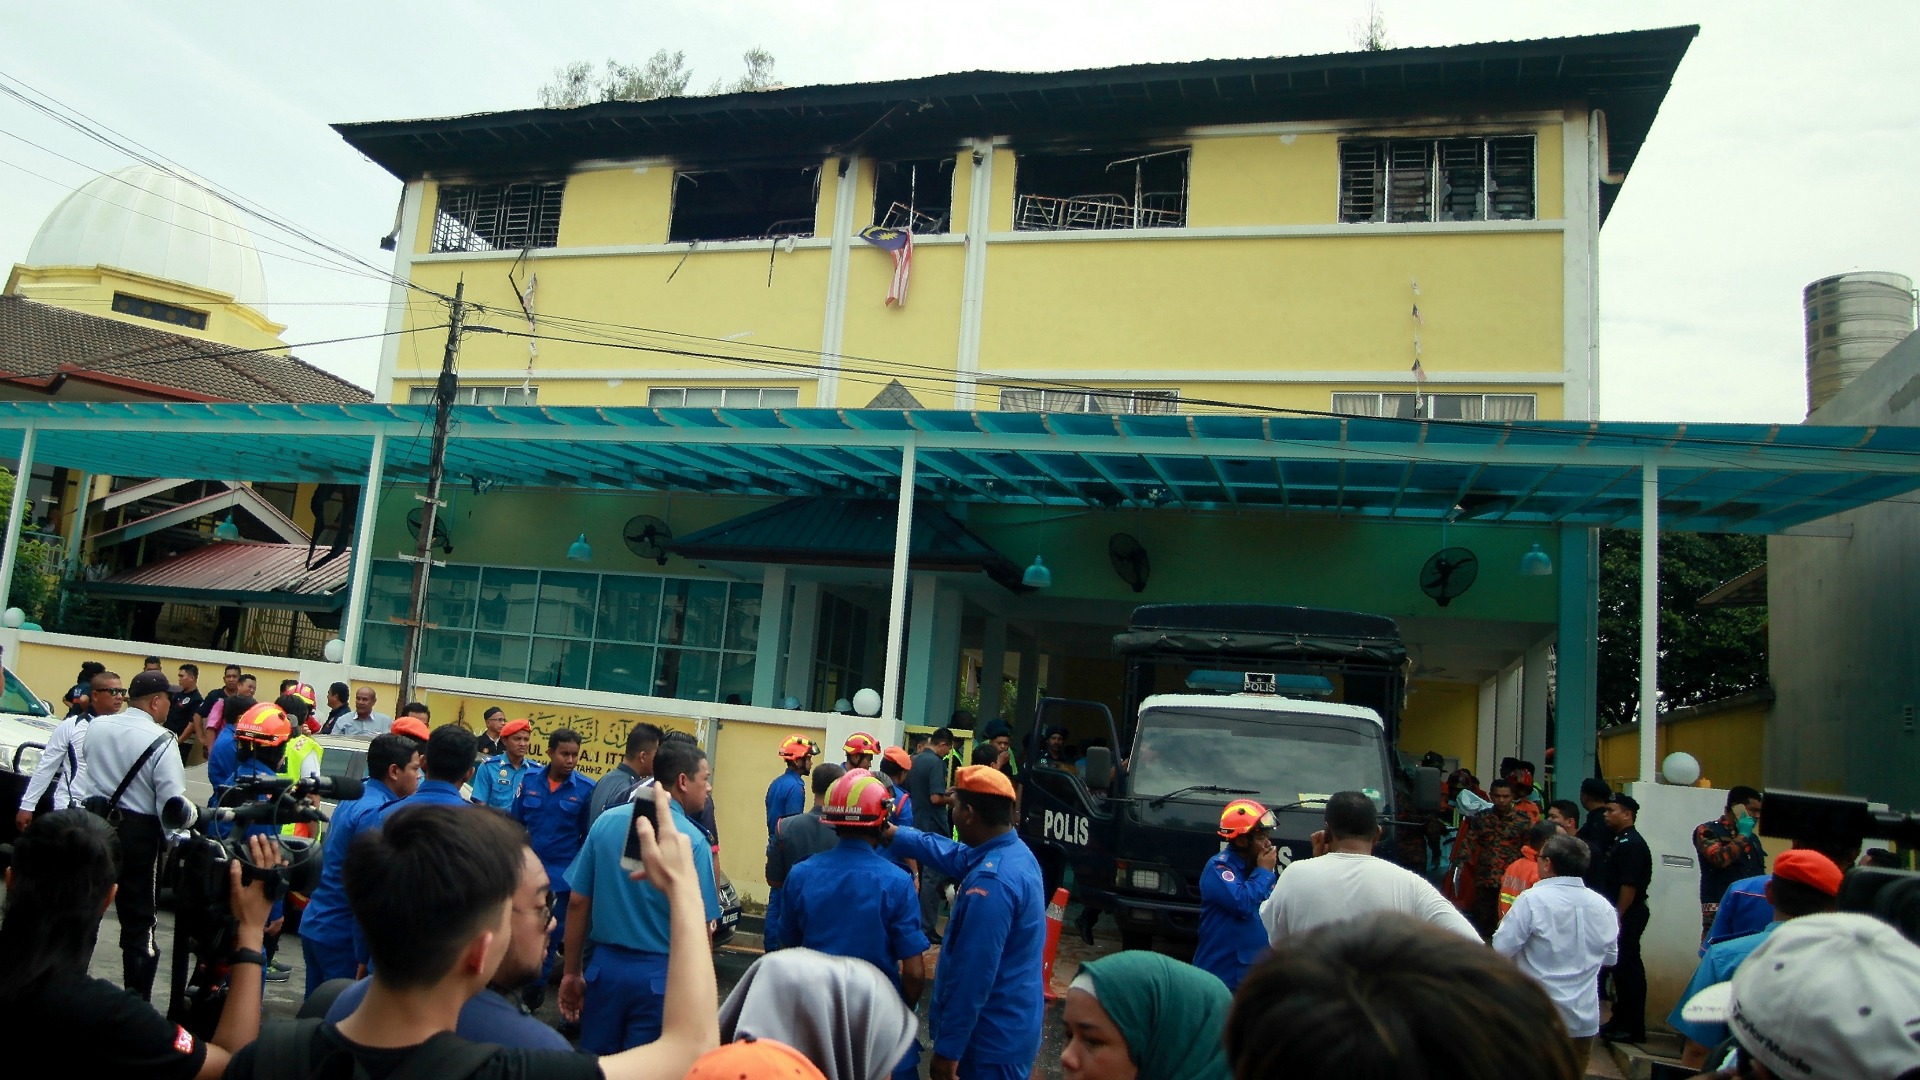 Mueren al menos 23 estudiantes al incendiarse una escuela en Kuala Lumpur